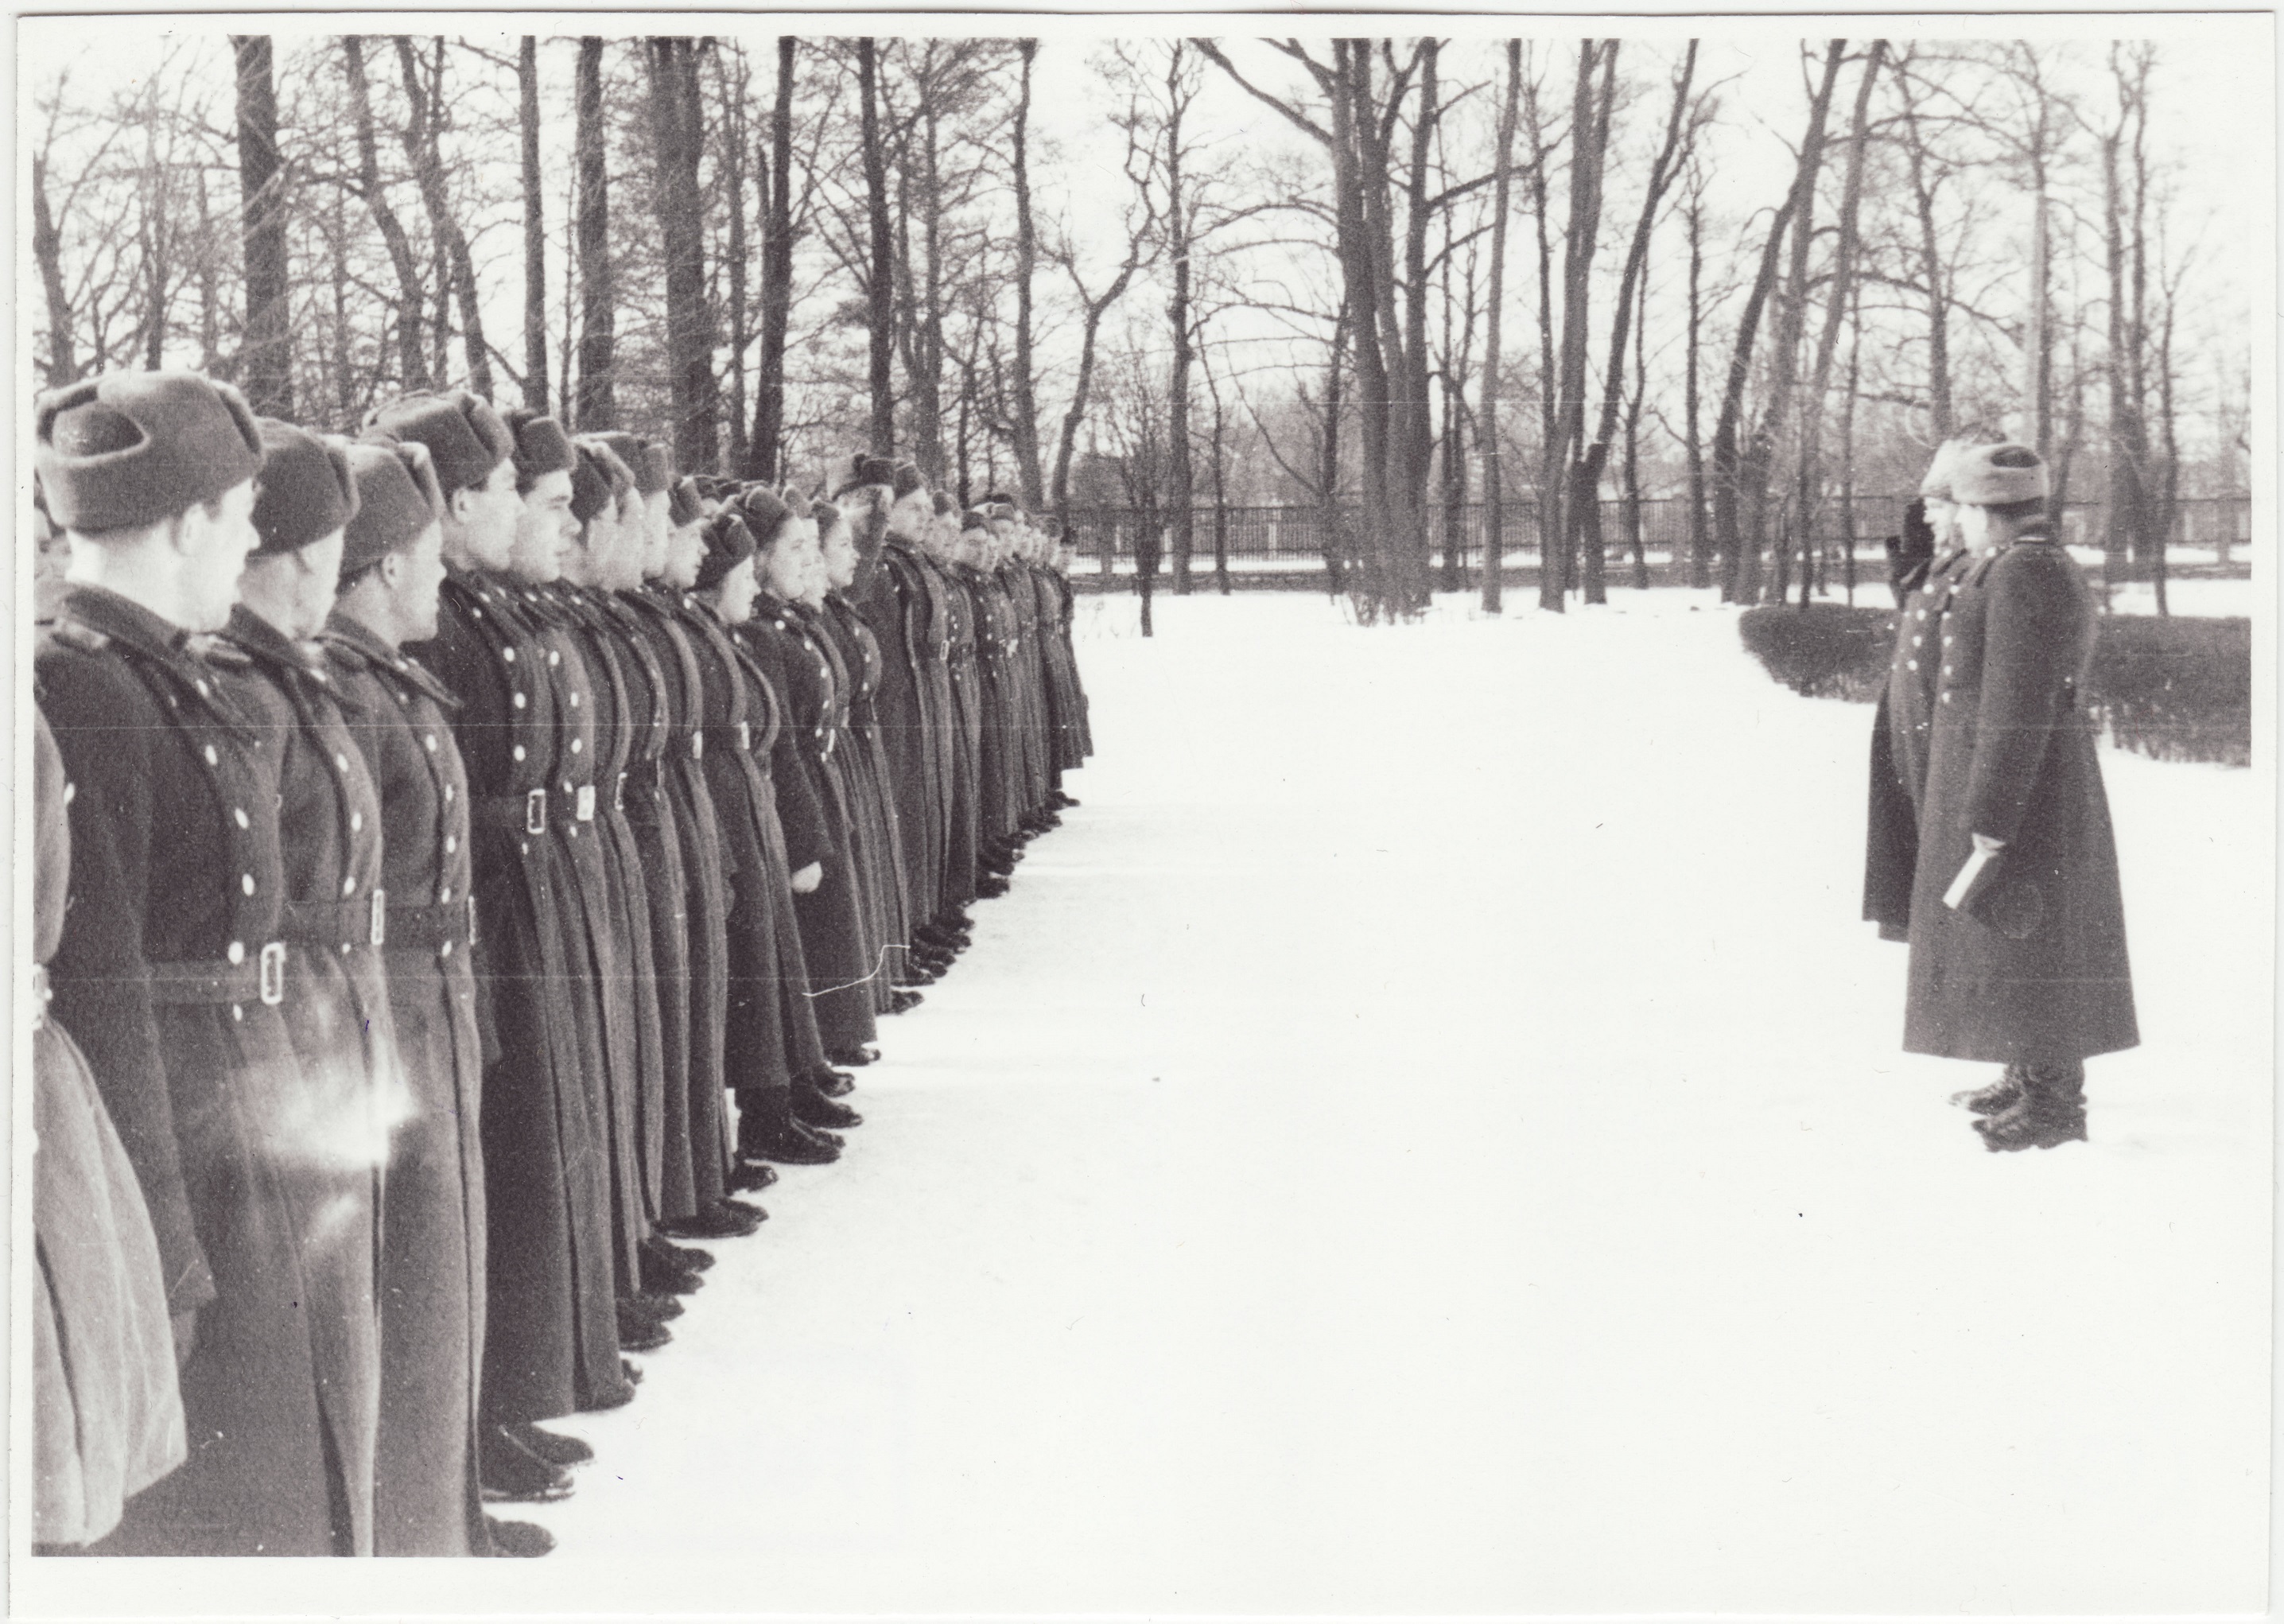 Tallinna sõjaväestatud tuletõrje komandode riviline ülevaatus, 1955.a.